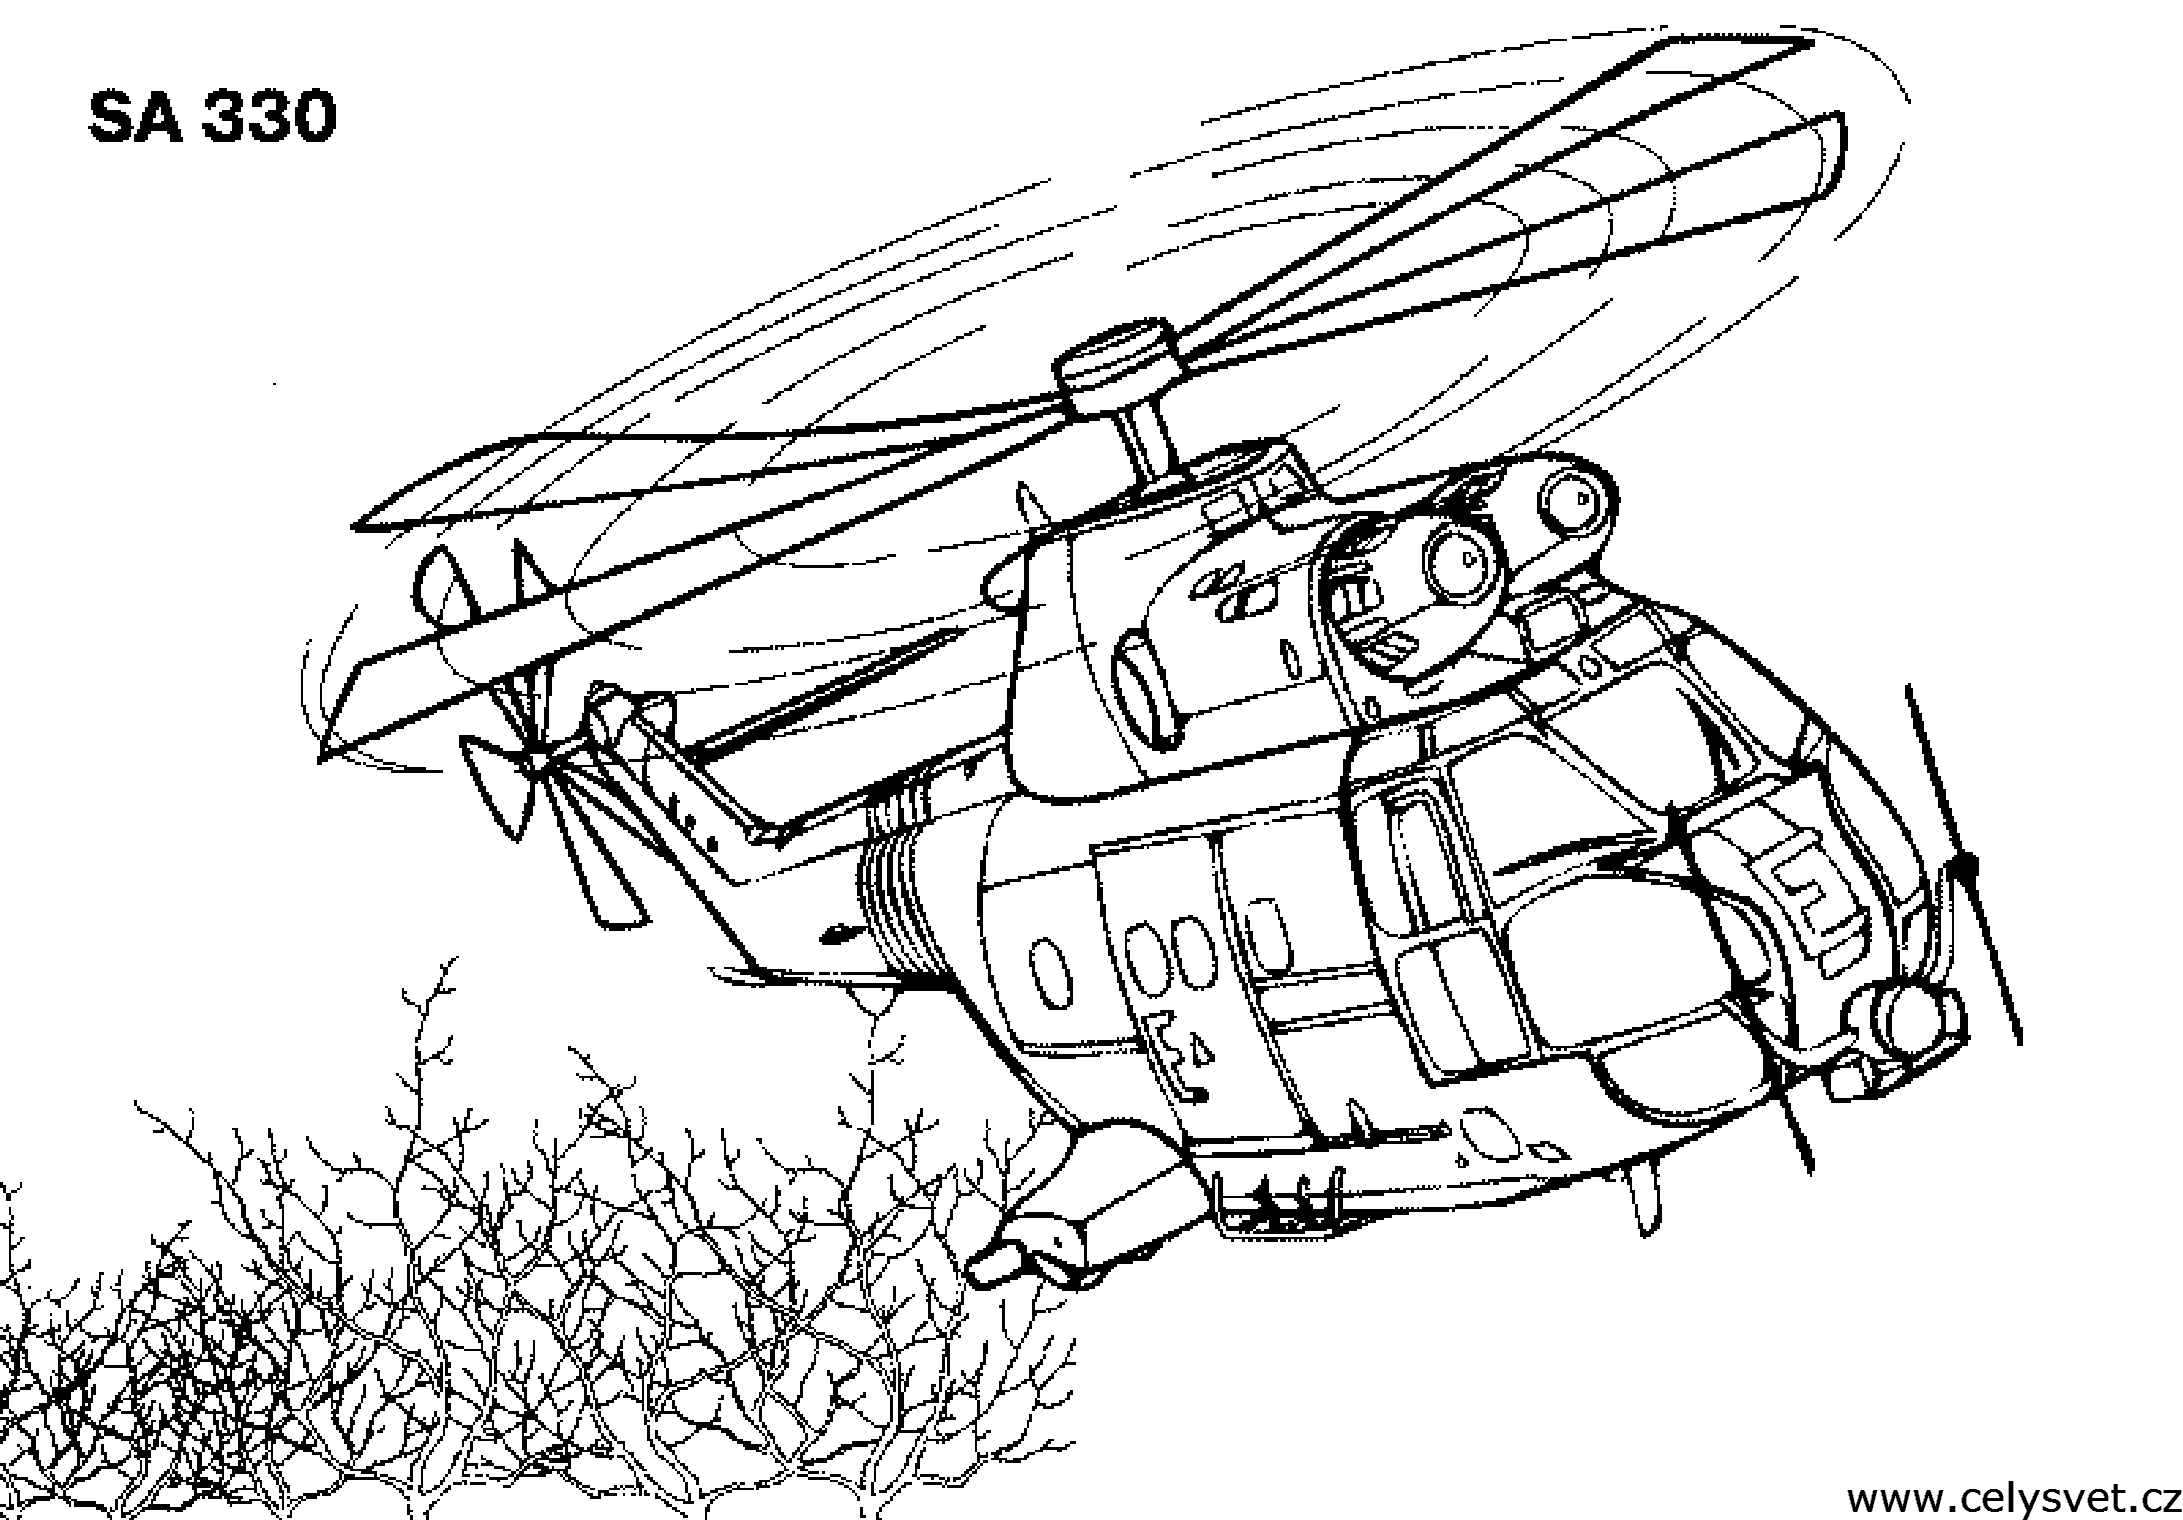 Раскраски для мальчиков вертолеты